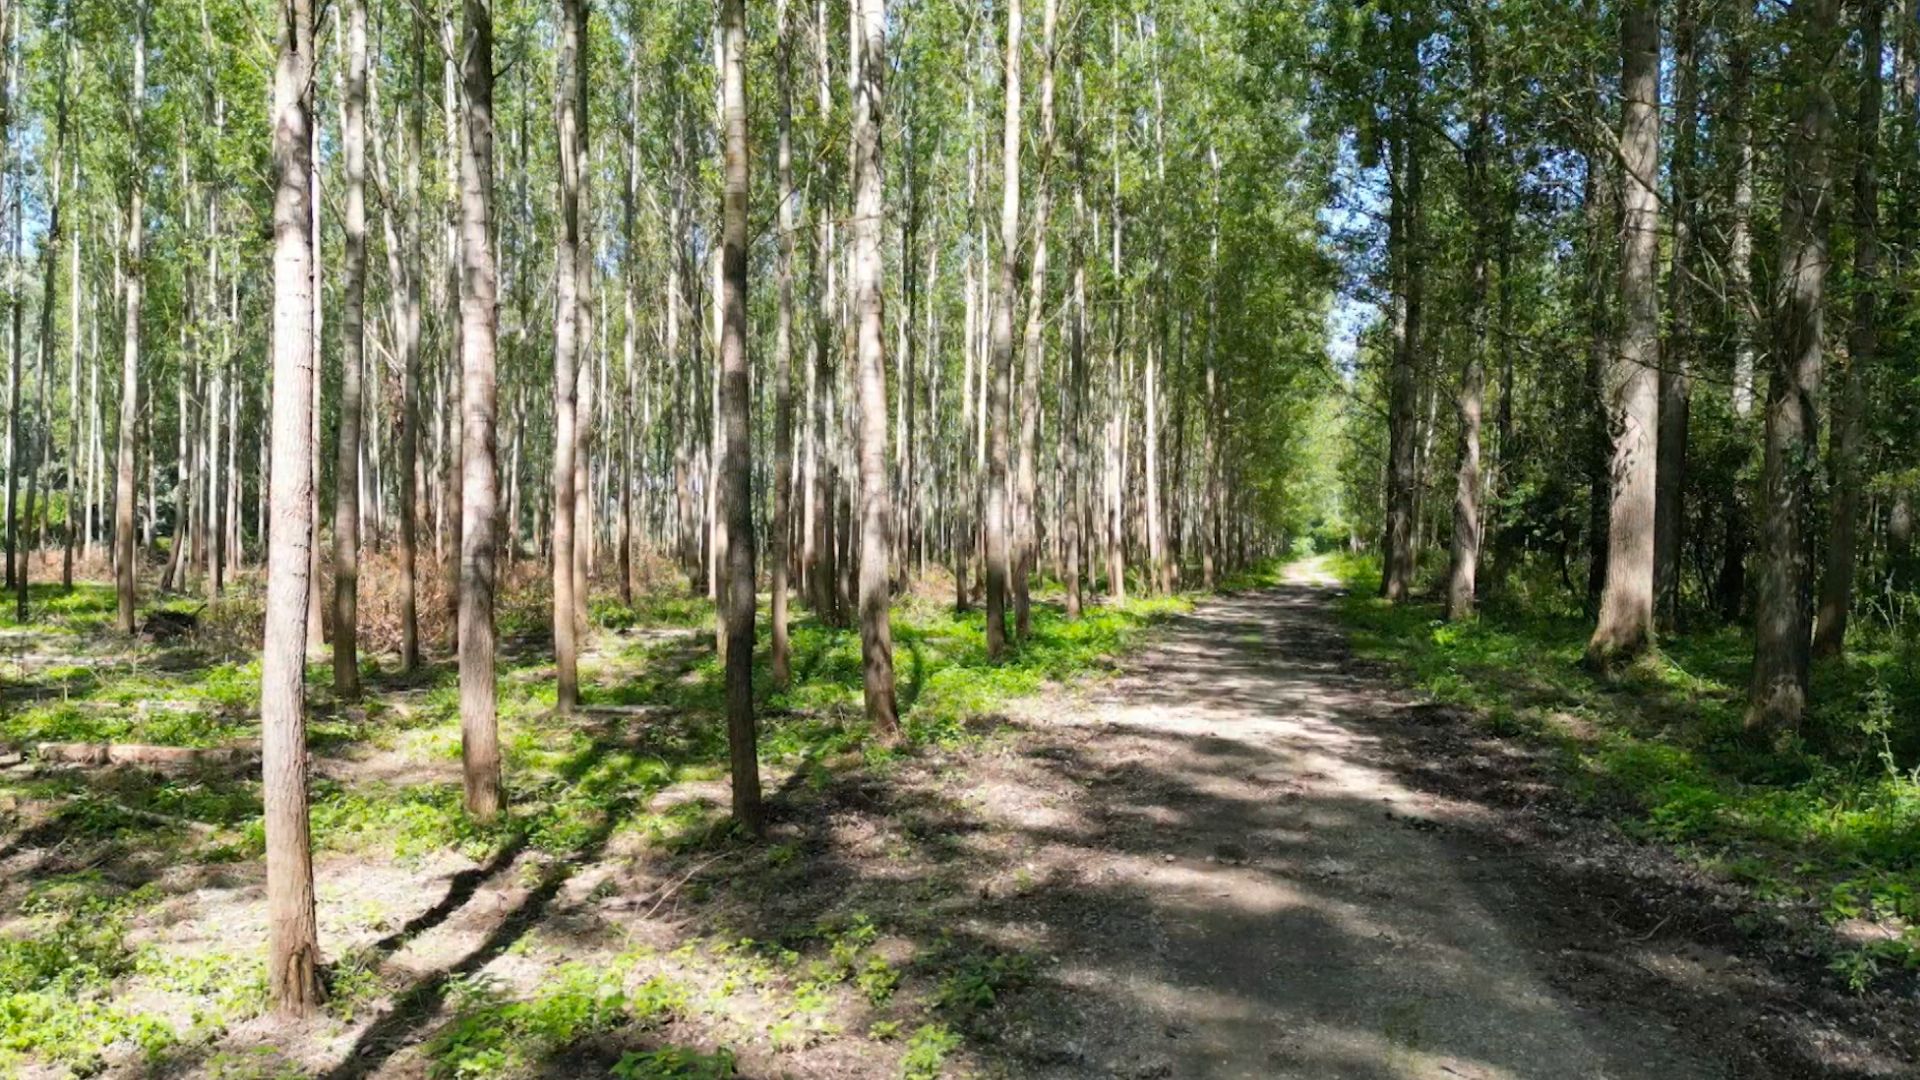 Aktivisti tvrdia, že pôvodné stromy boli vyrúbané, aby uvoľnili miesto týmto topoľovým lesom, čo ďalej poškodzuje ekosystém oblasti.  /CGTN